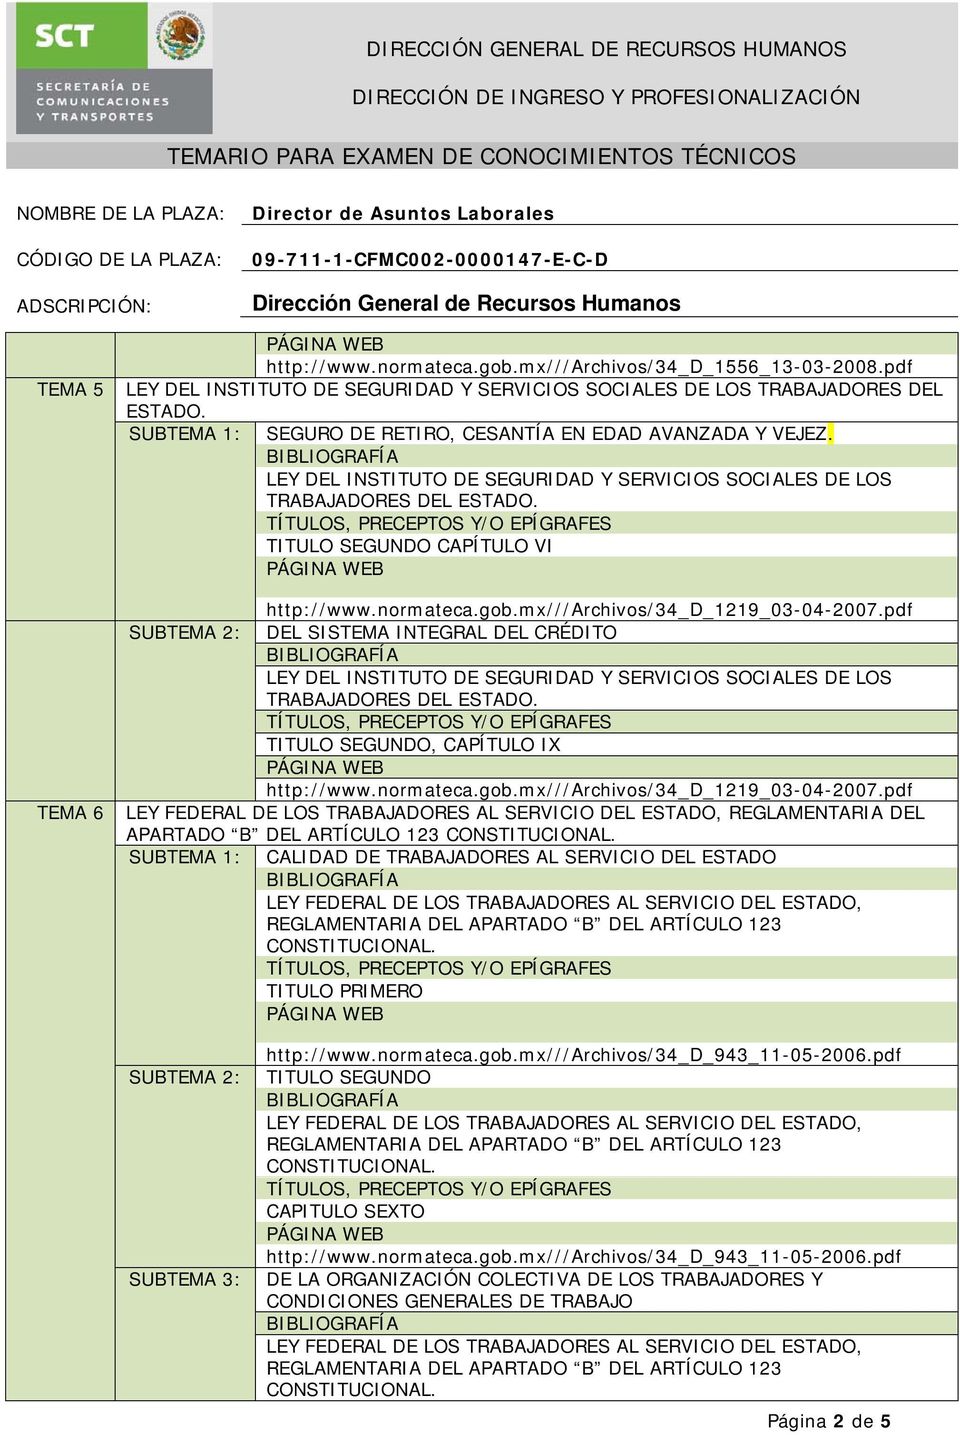 mx///archivos/34_d_1219_03-04-2007.pdf 2: DEL SISTEMA INTEGRAL DEL CRÉDITO LEY DEL INSTITUTO DE SEGURIDAD Y SERVICIOS SOCIALES DE LOS TRABAJADORES DEL ESTADO. TITULO SEGUNDO, CAPÍTULO IX http://www.